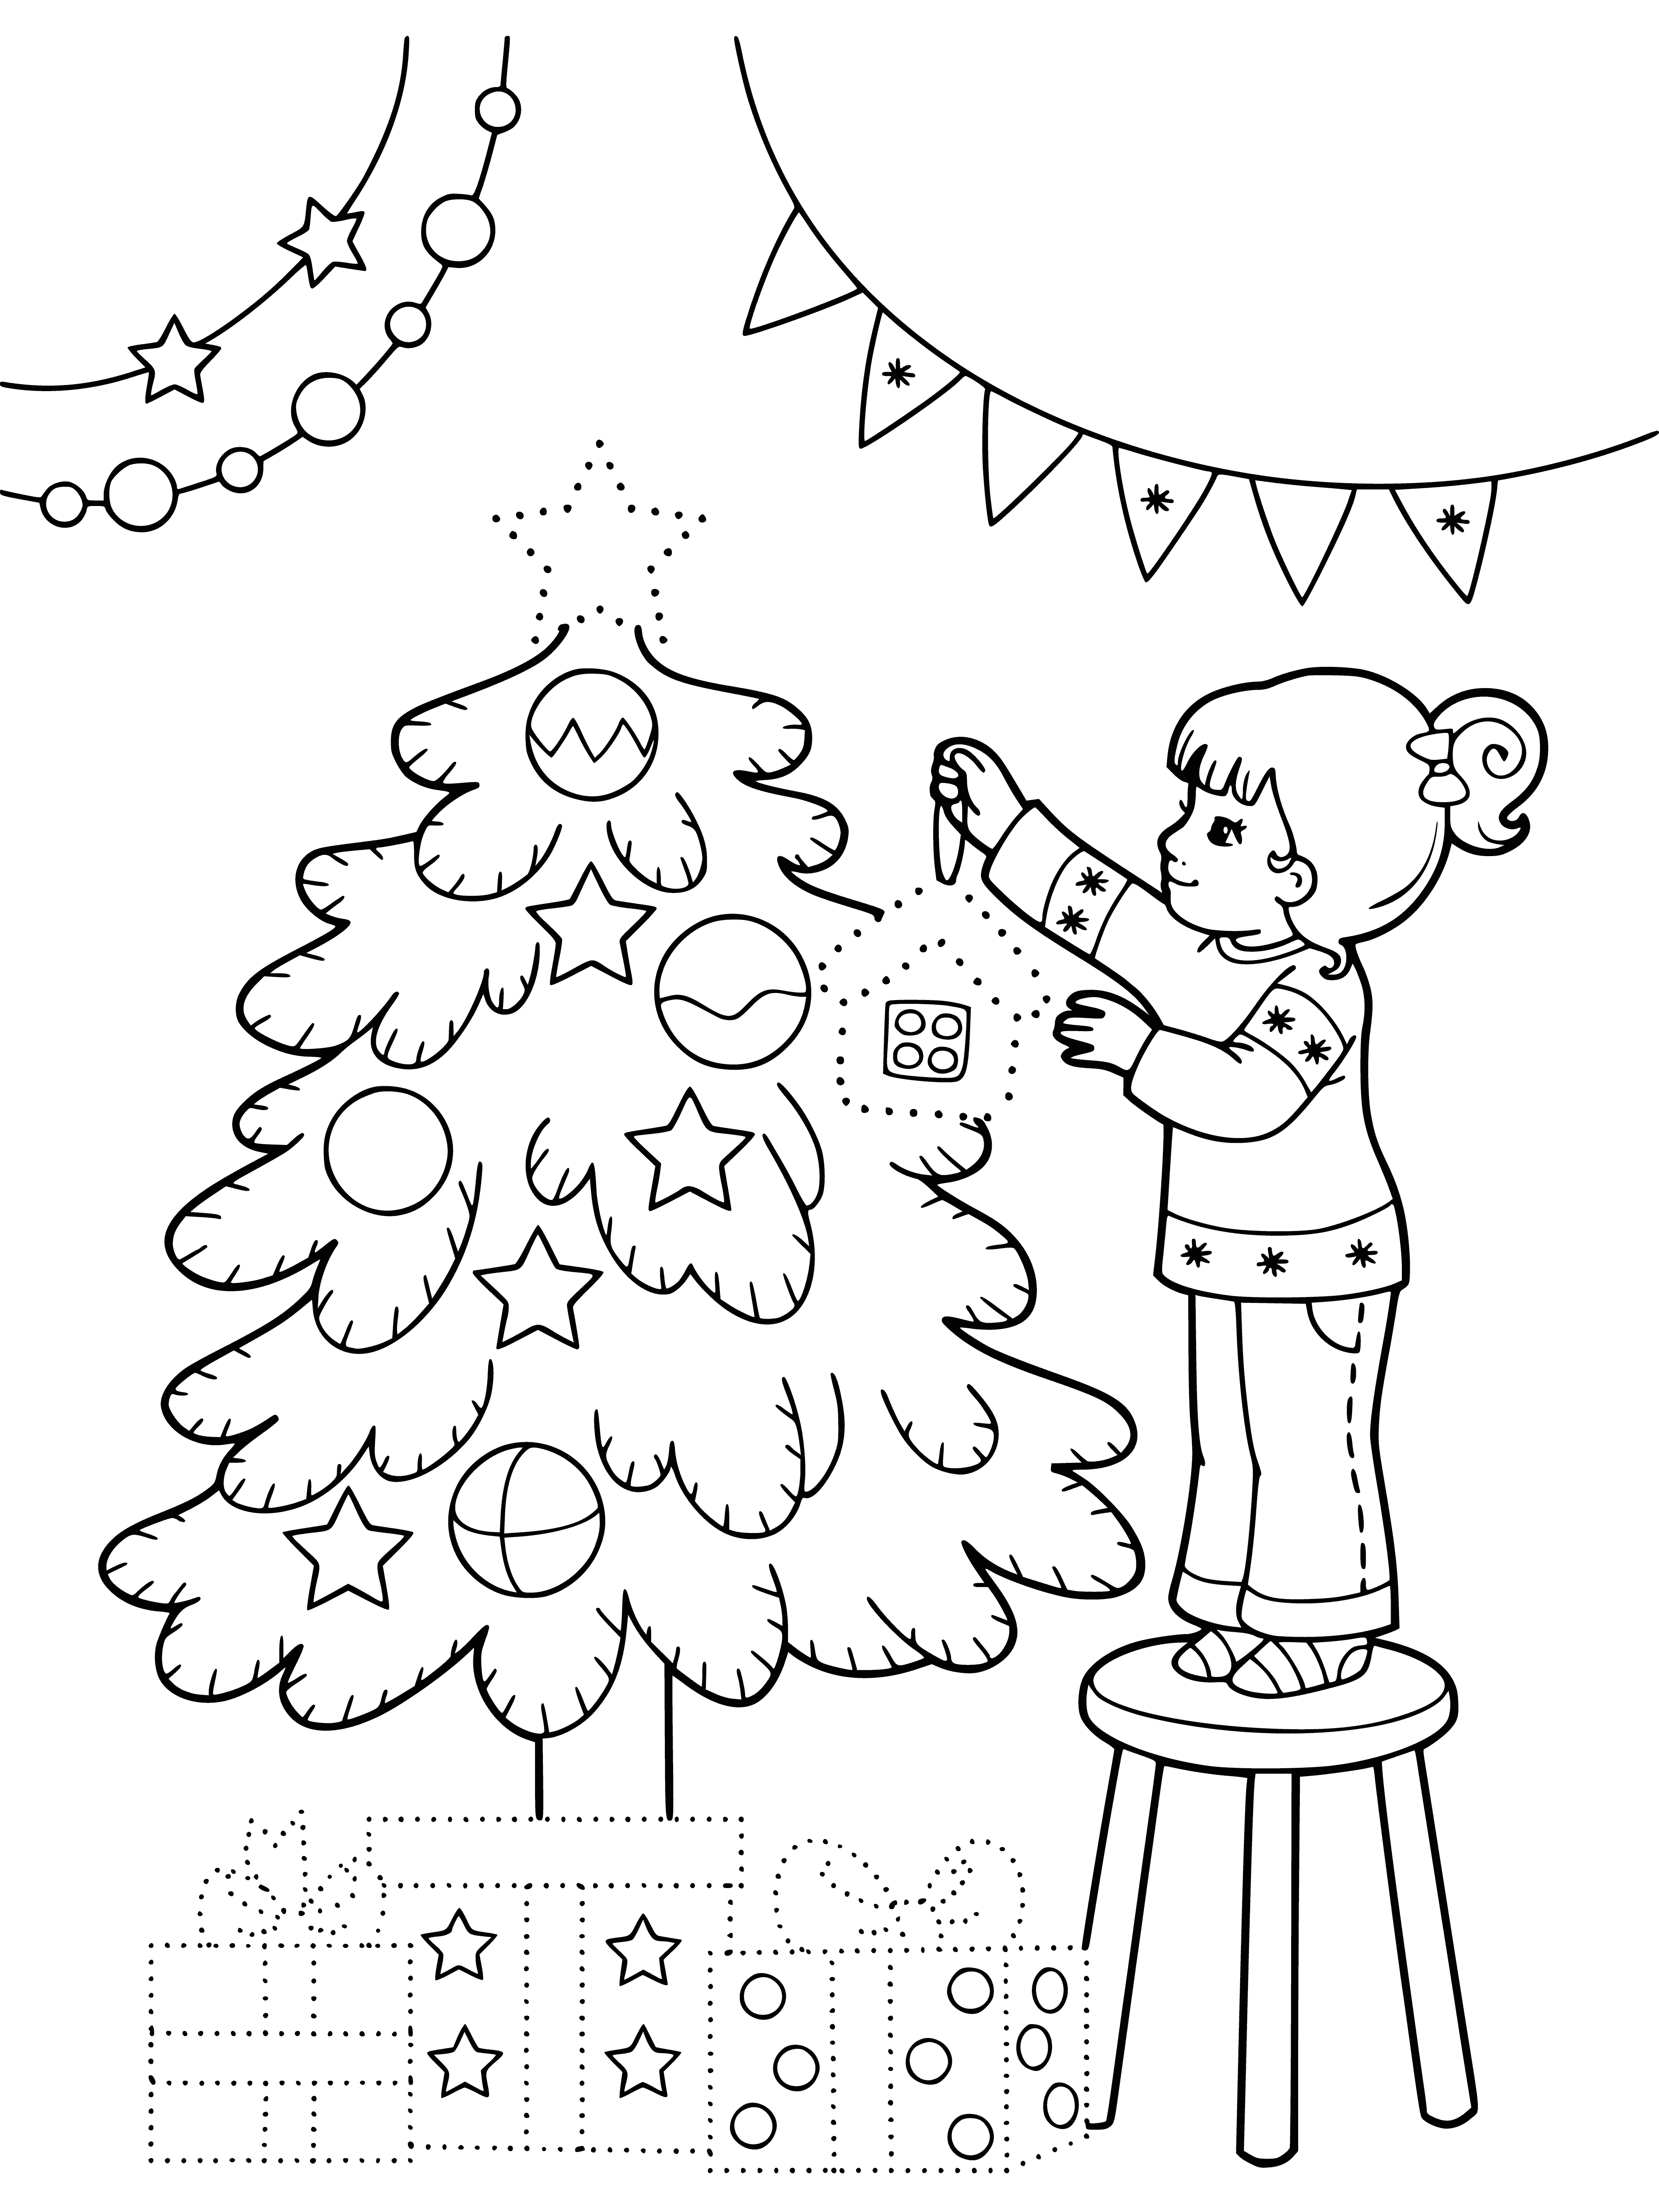 La ragazza decora un albero di Natale pagina da colorare